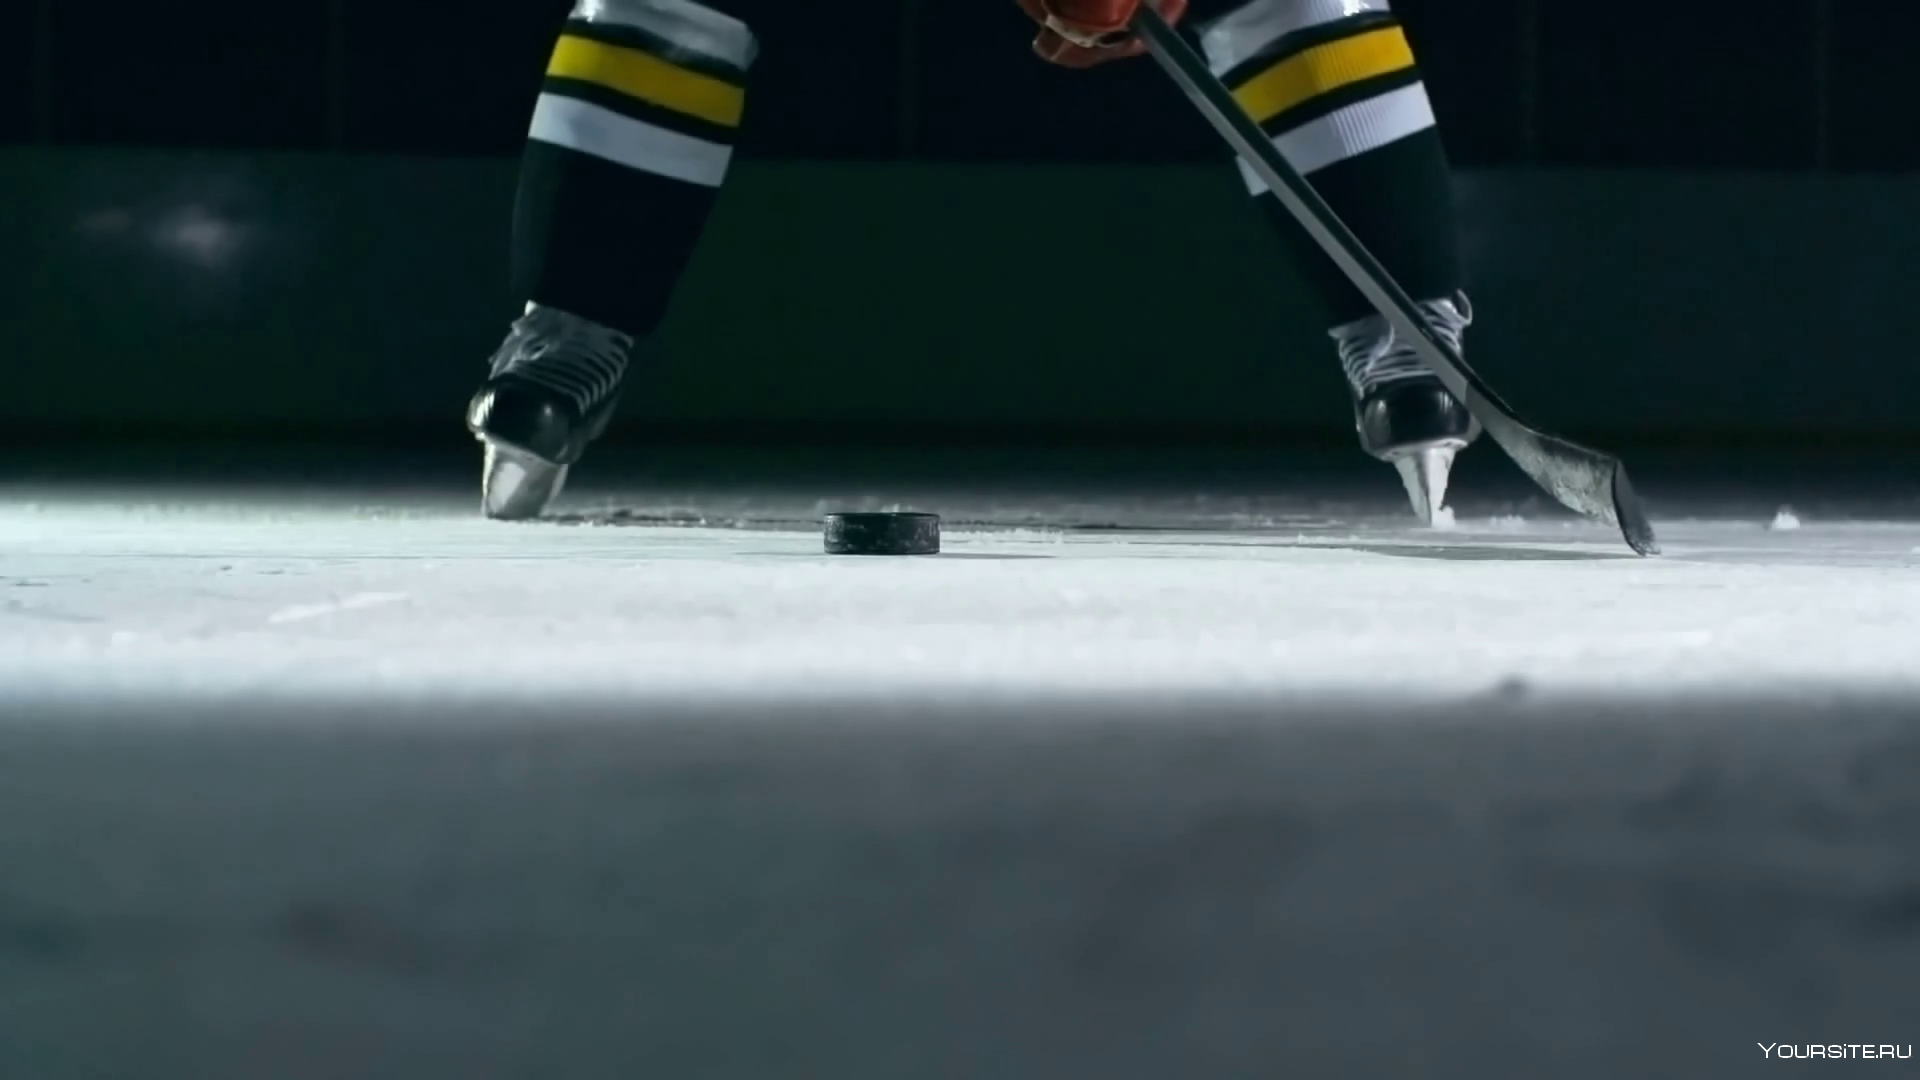 Хоккейная клюшка на льду. Шайба для хоккея. Хоккейные коньки на льду. Хоккейные коньки и клюшка. Хоккей с шайбой видео